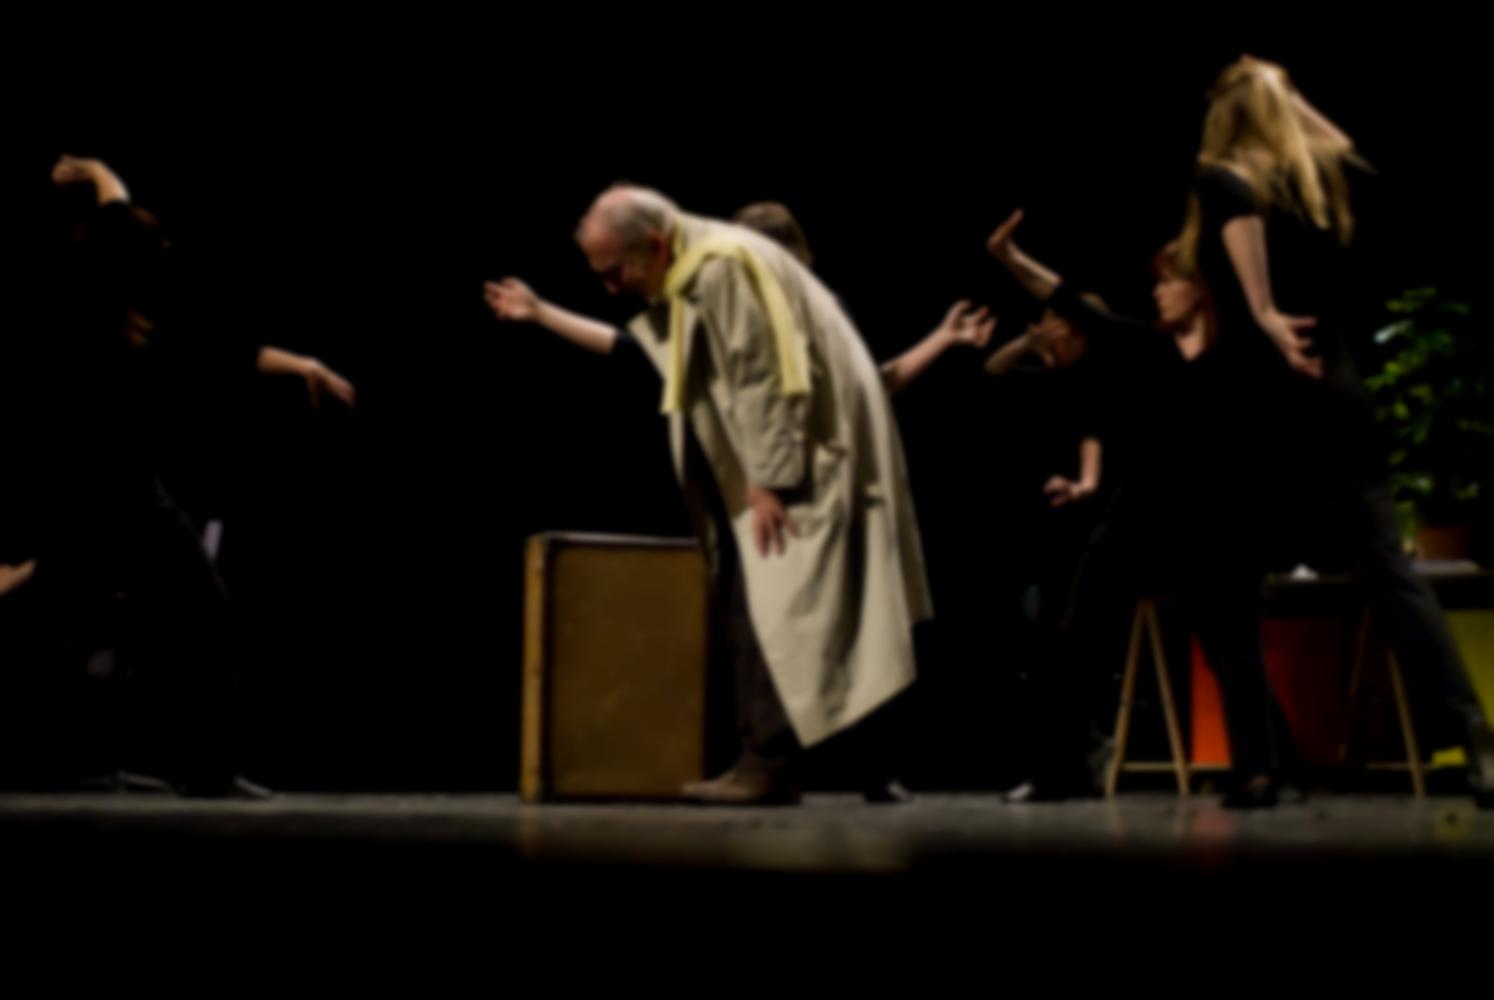 Deux bras d'une choreute dépassent derrière le père en imperméable, penché près de sa valise, autour duquel le chœur évolue d'une façon menaçante. Nanterre, octobre 2009.